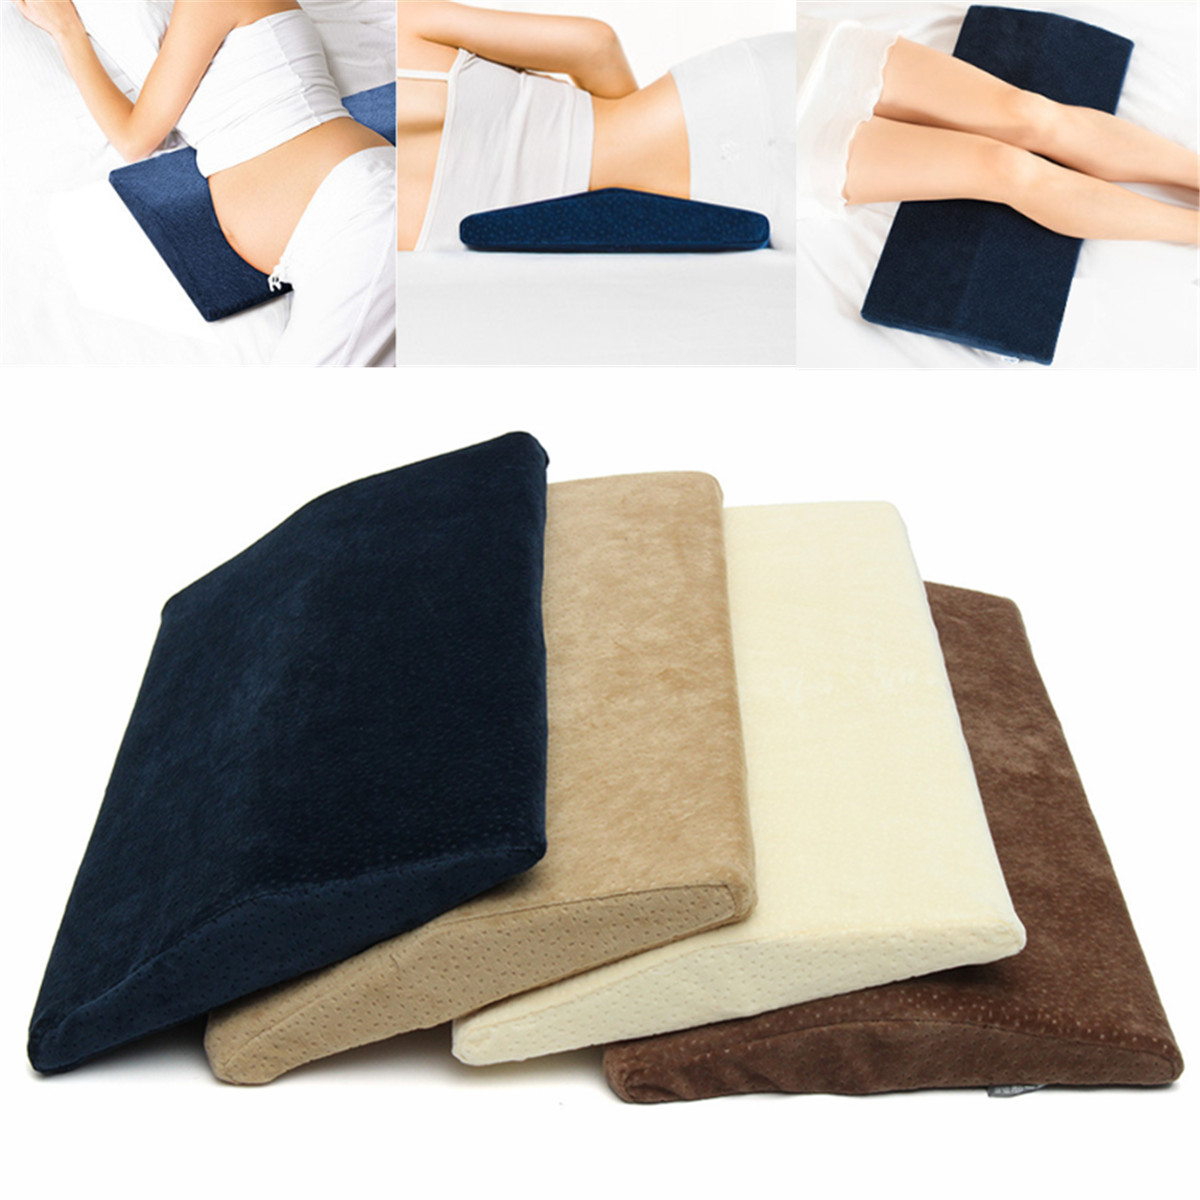 60x30cm Memory Foam Lumbar Pillow Sleeping Waist Back Support Cushion